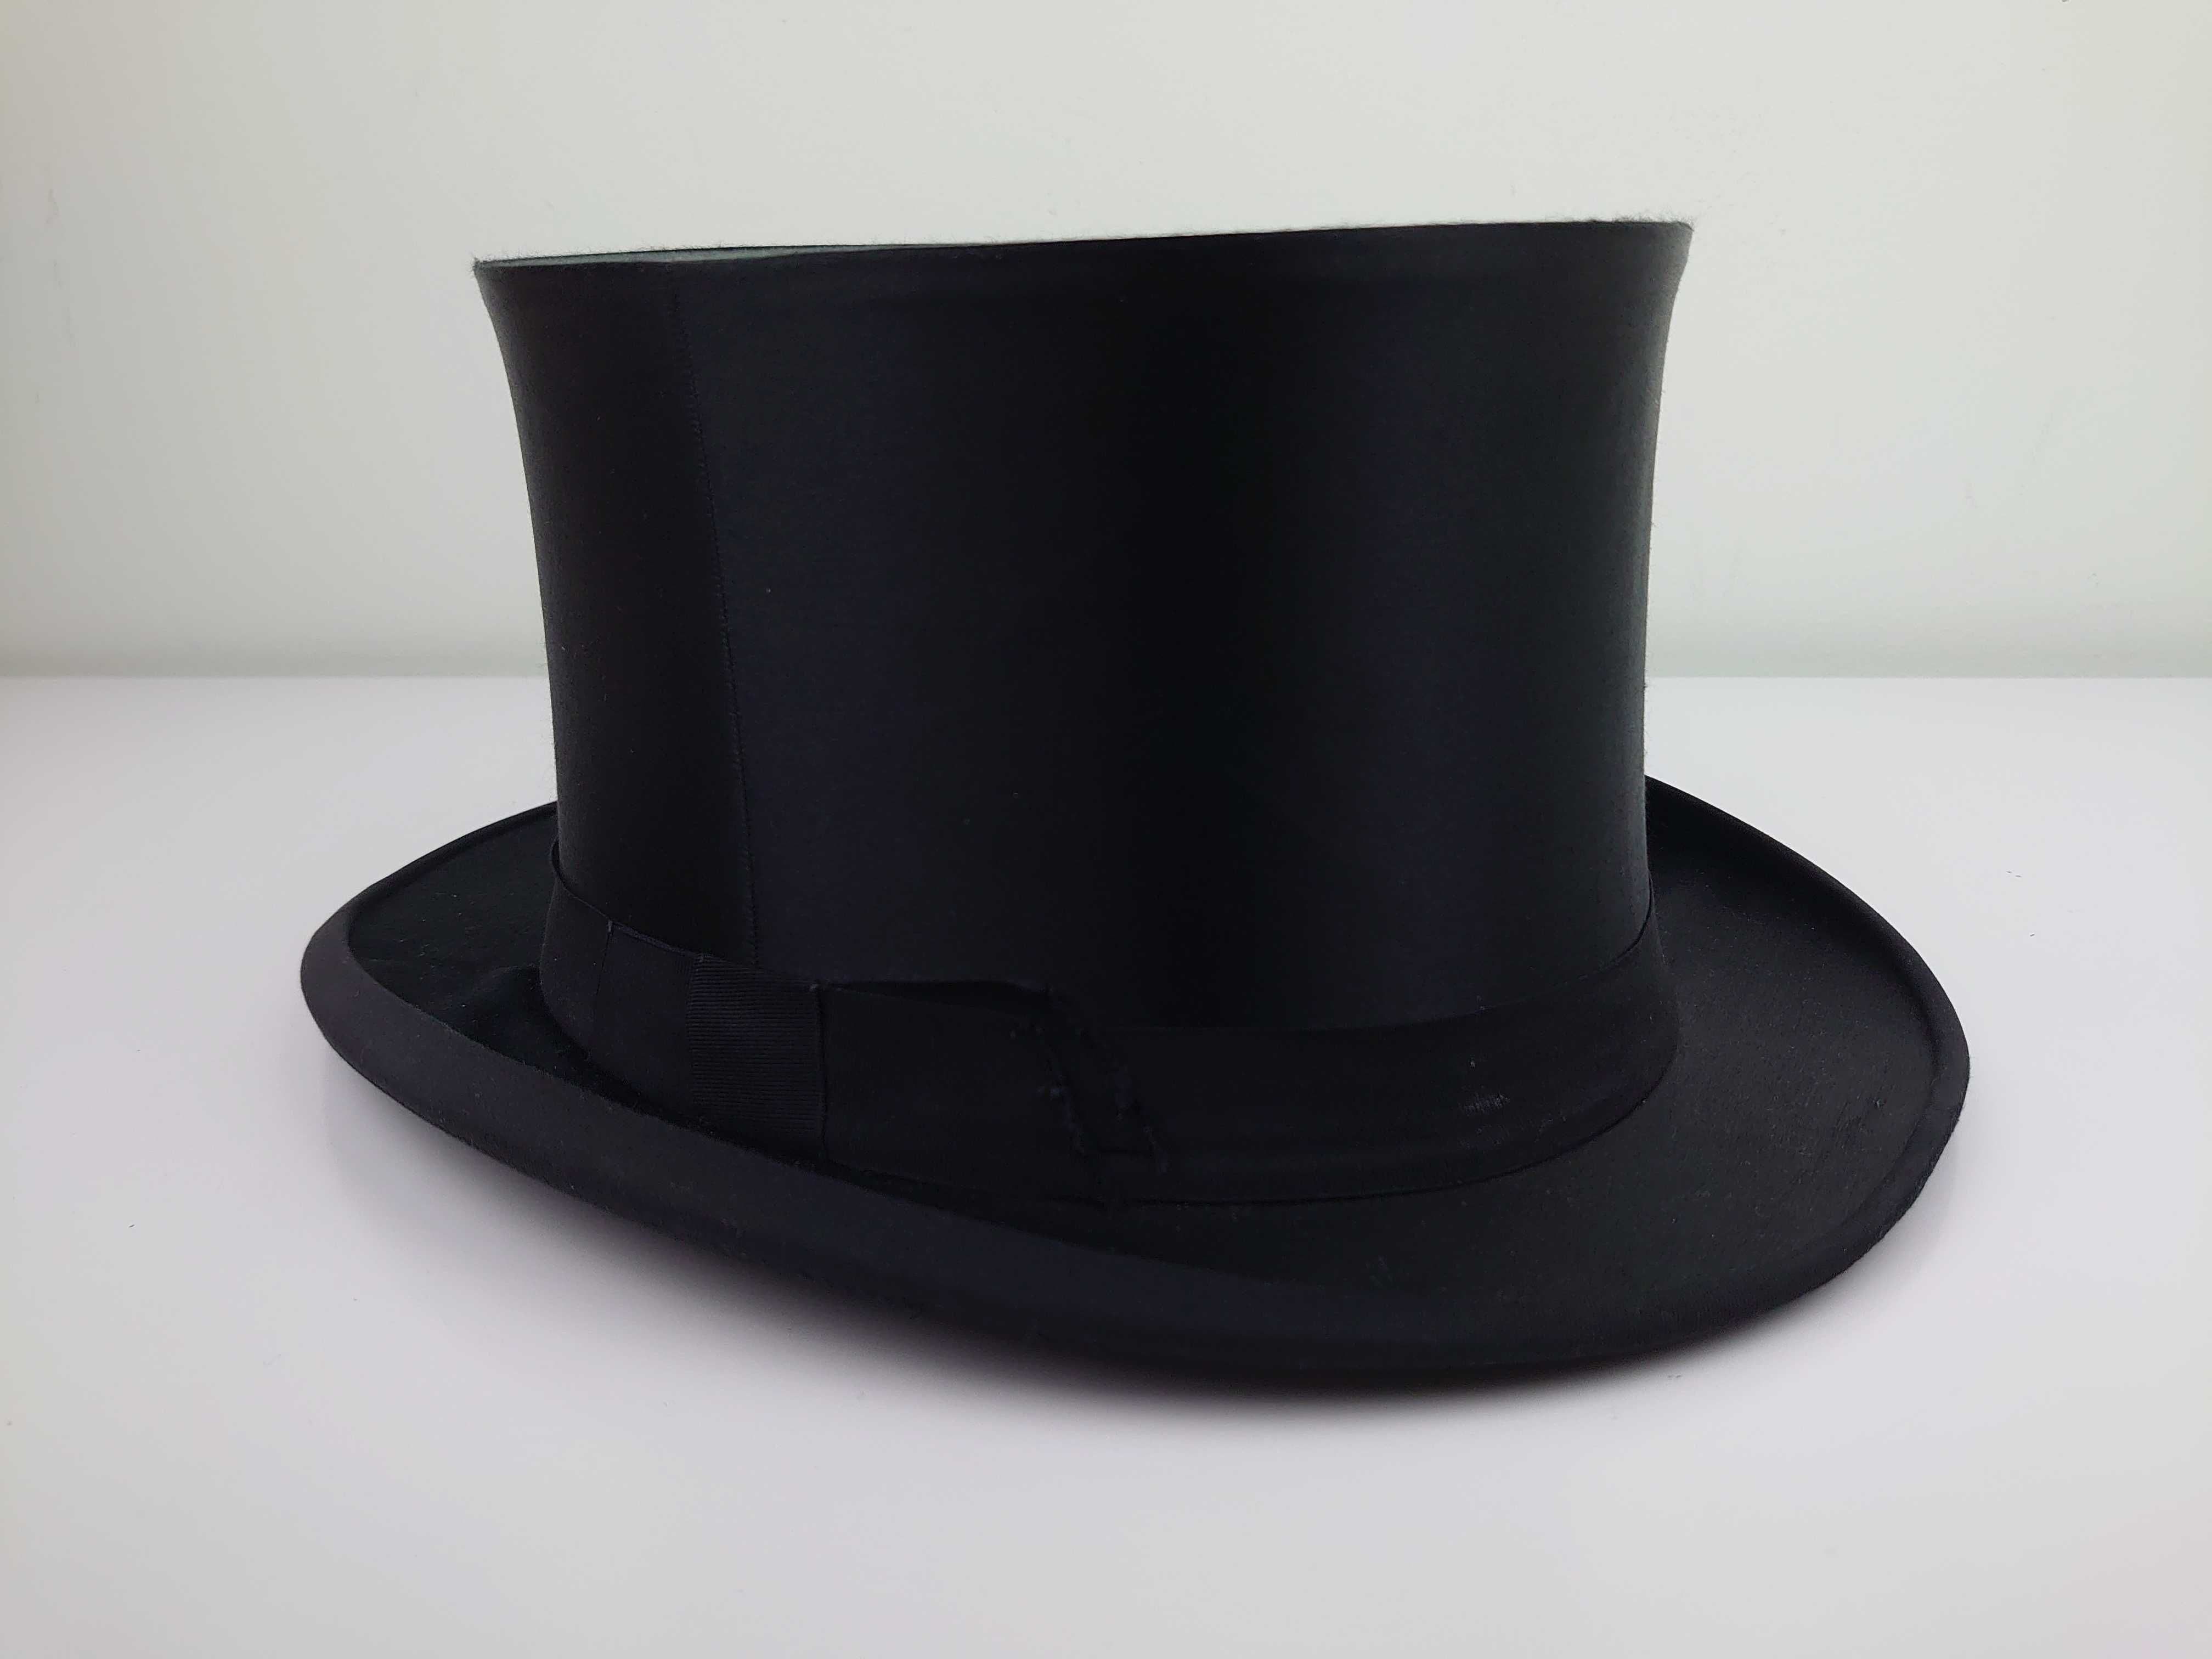 Cylinder kapelusz składany czarny Tremel Heinrich Schowe rozmiar 64